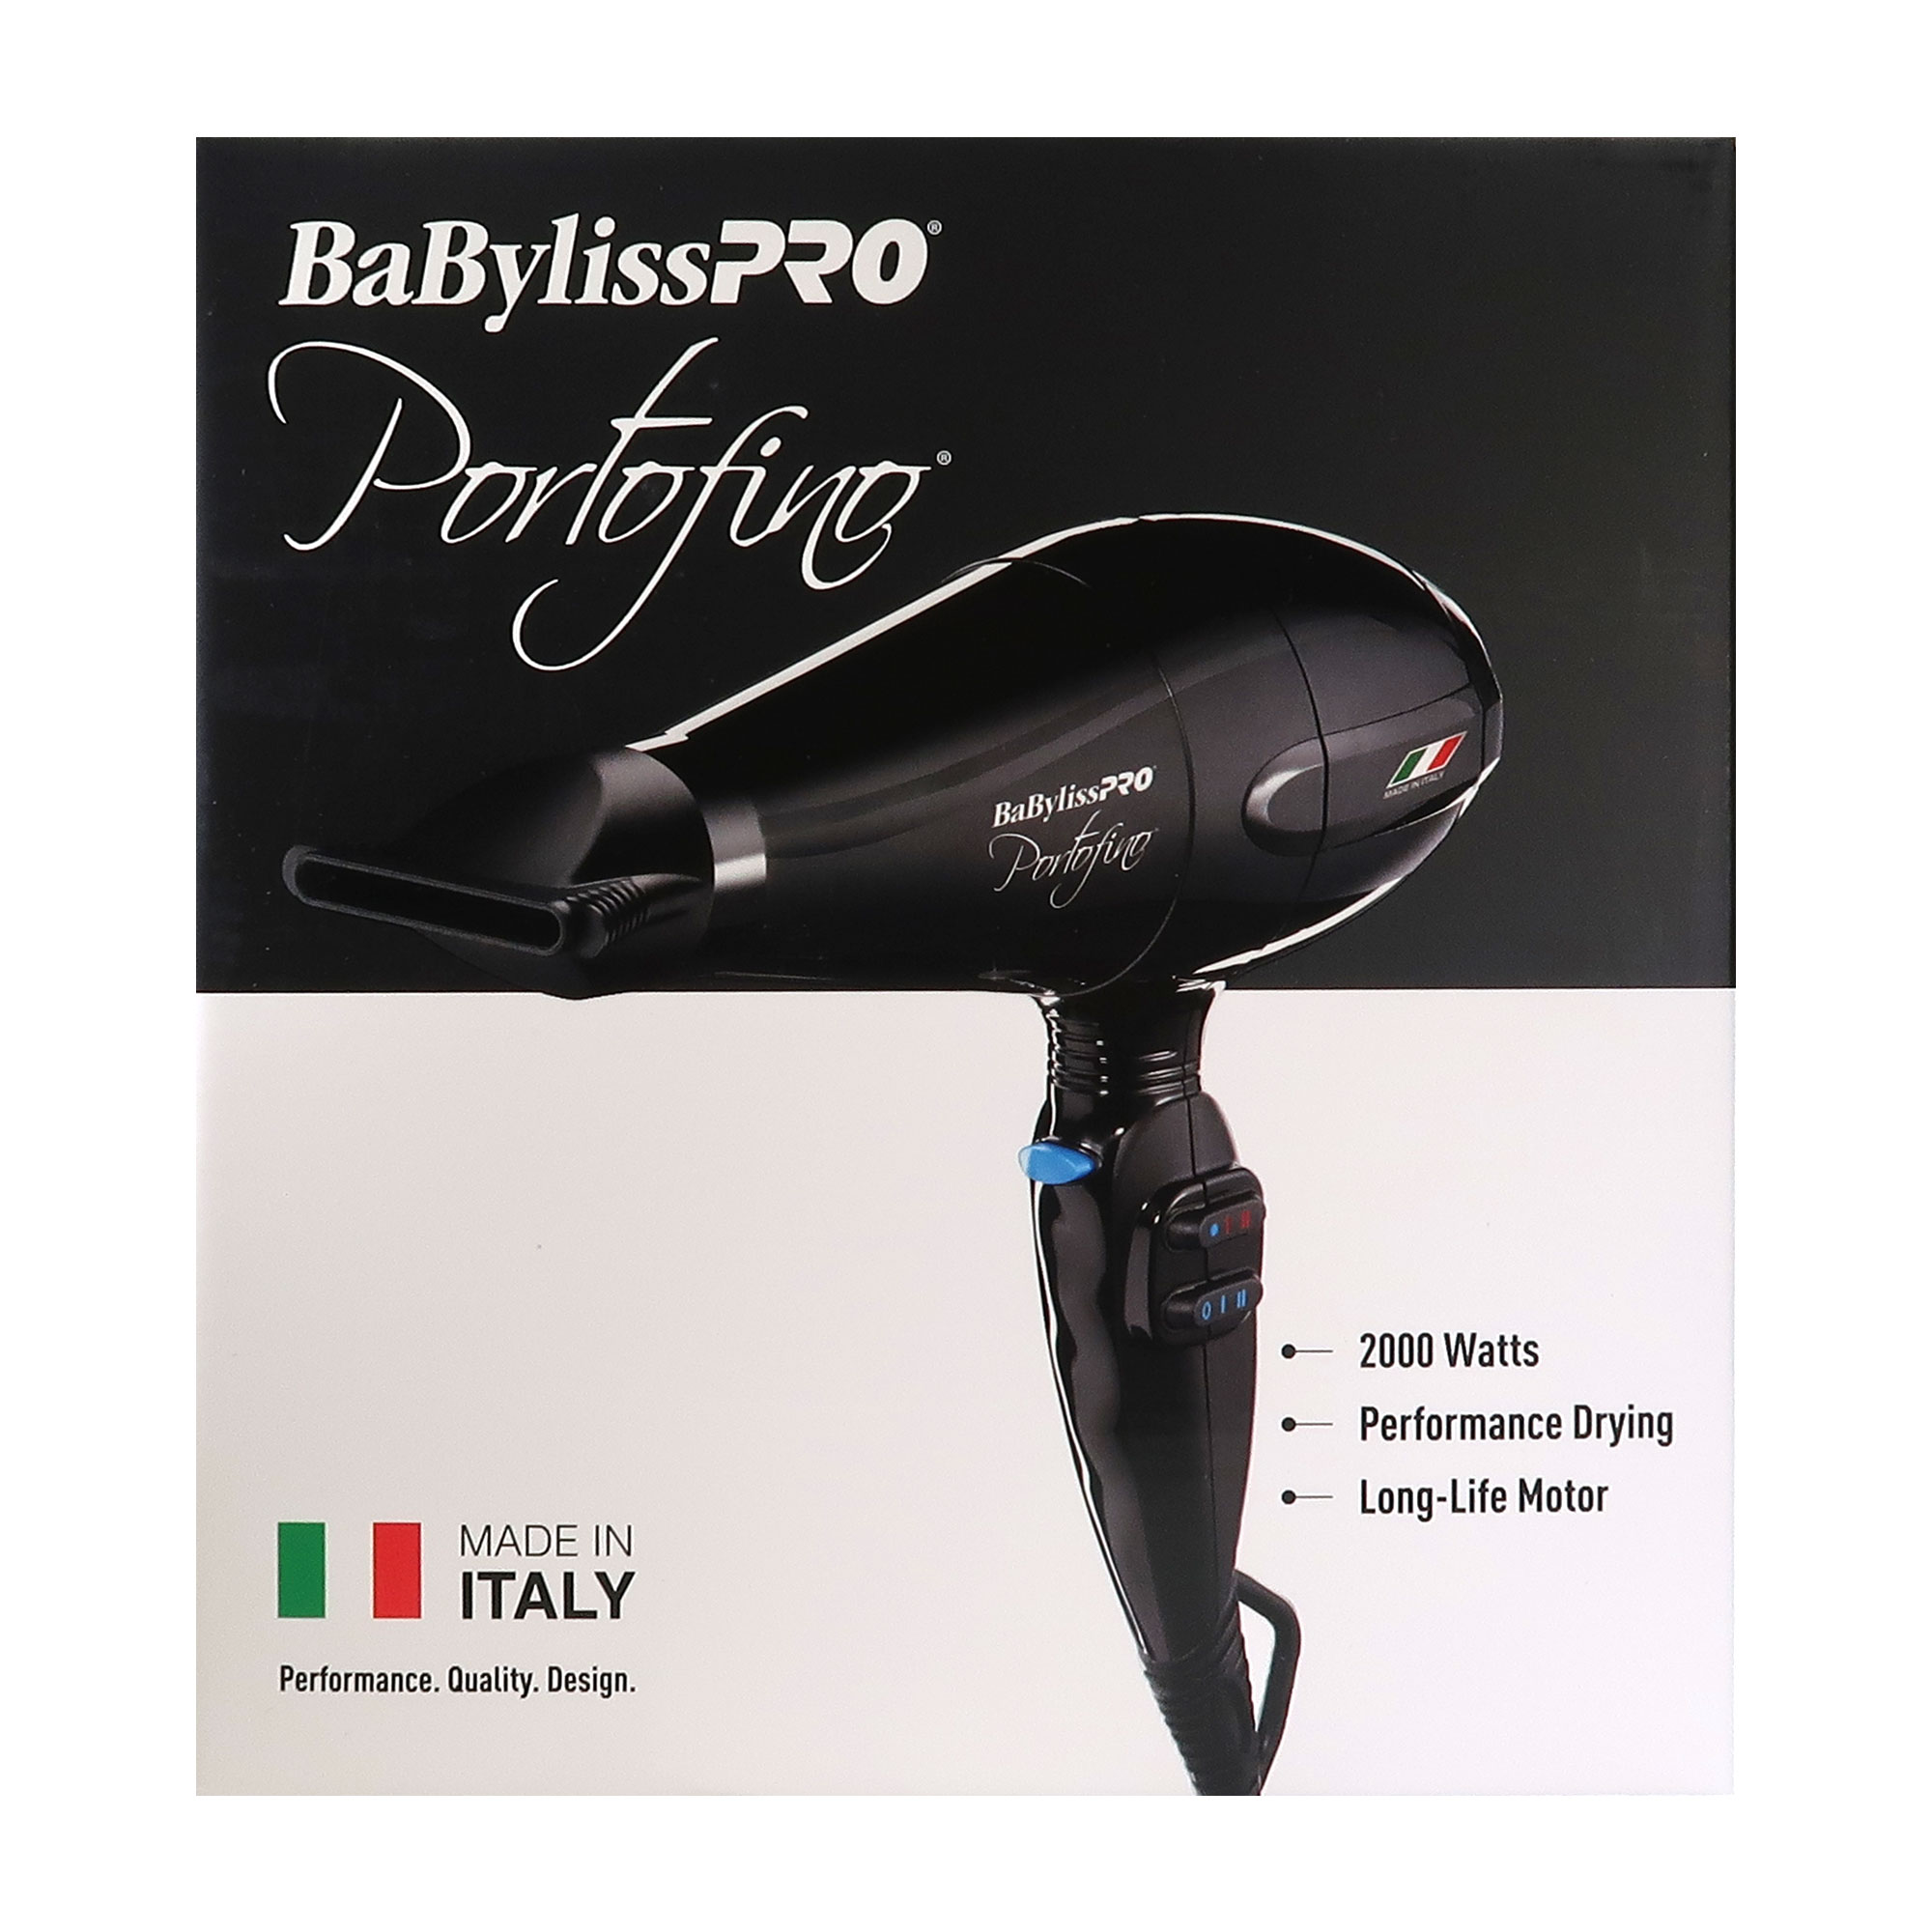 BaBylissPRO BaByliss Pro Portofino 2000 Watts Dryer Black #BPOR1